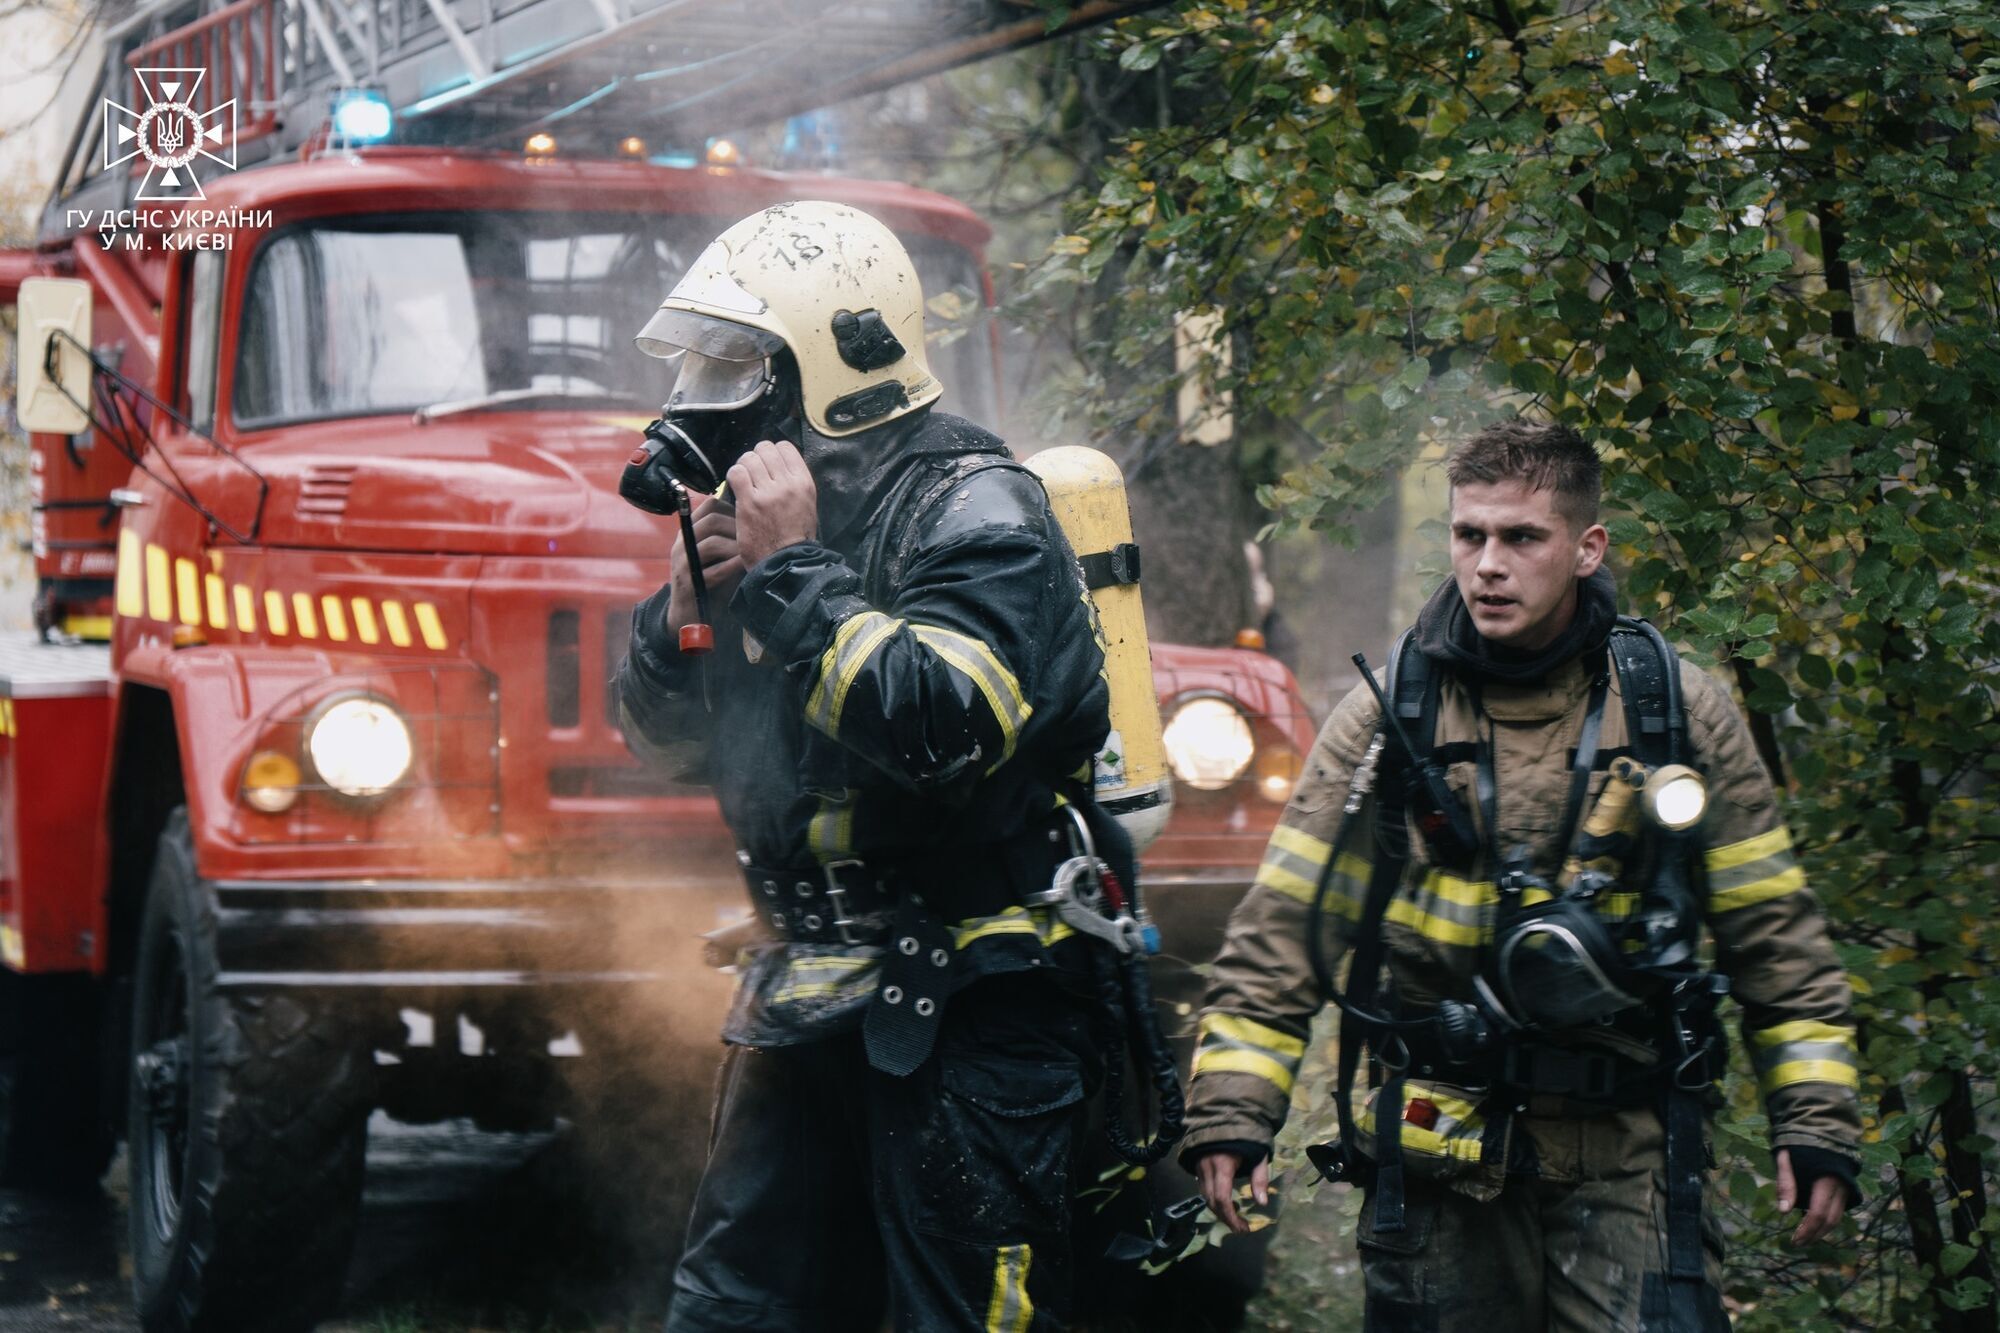 В Киеве во время пожара в квартире дома бойцы ГСЧС спасли младенца. Фото и видео